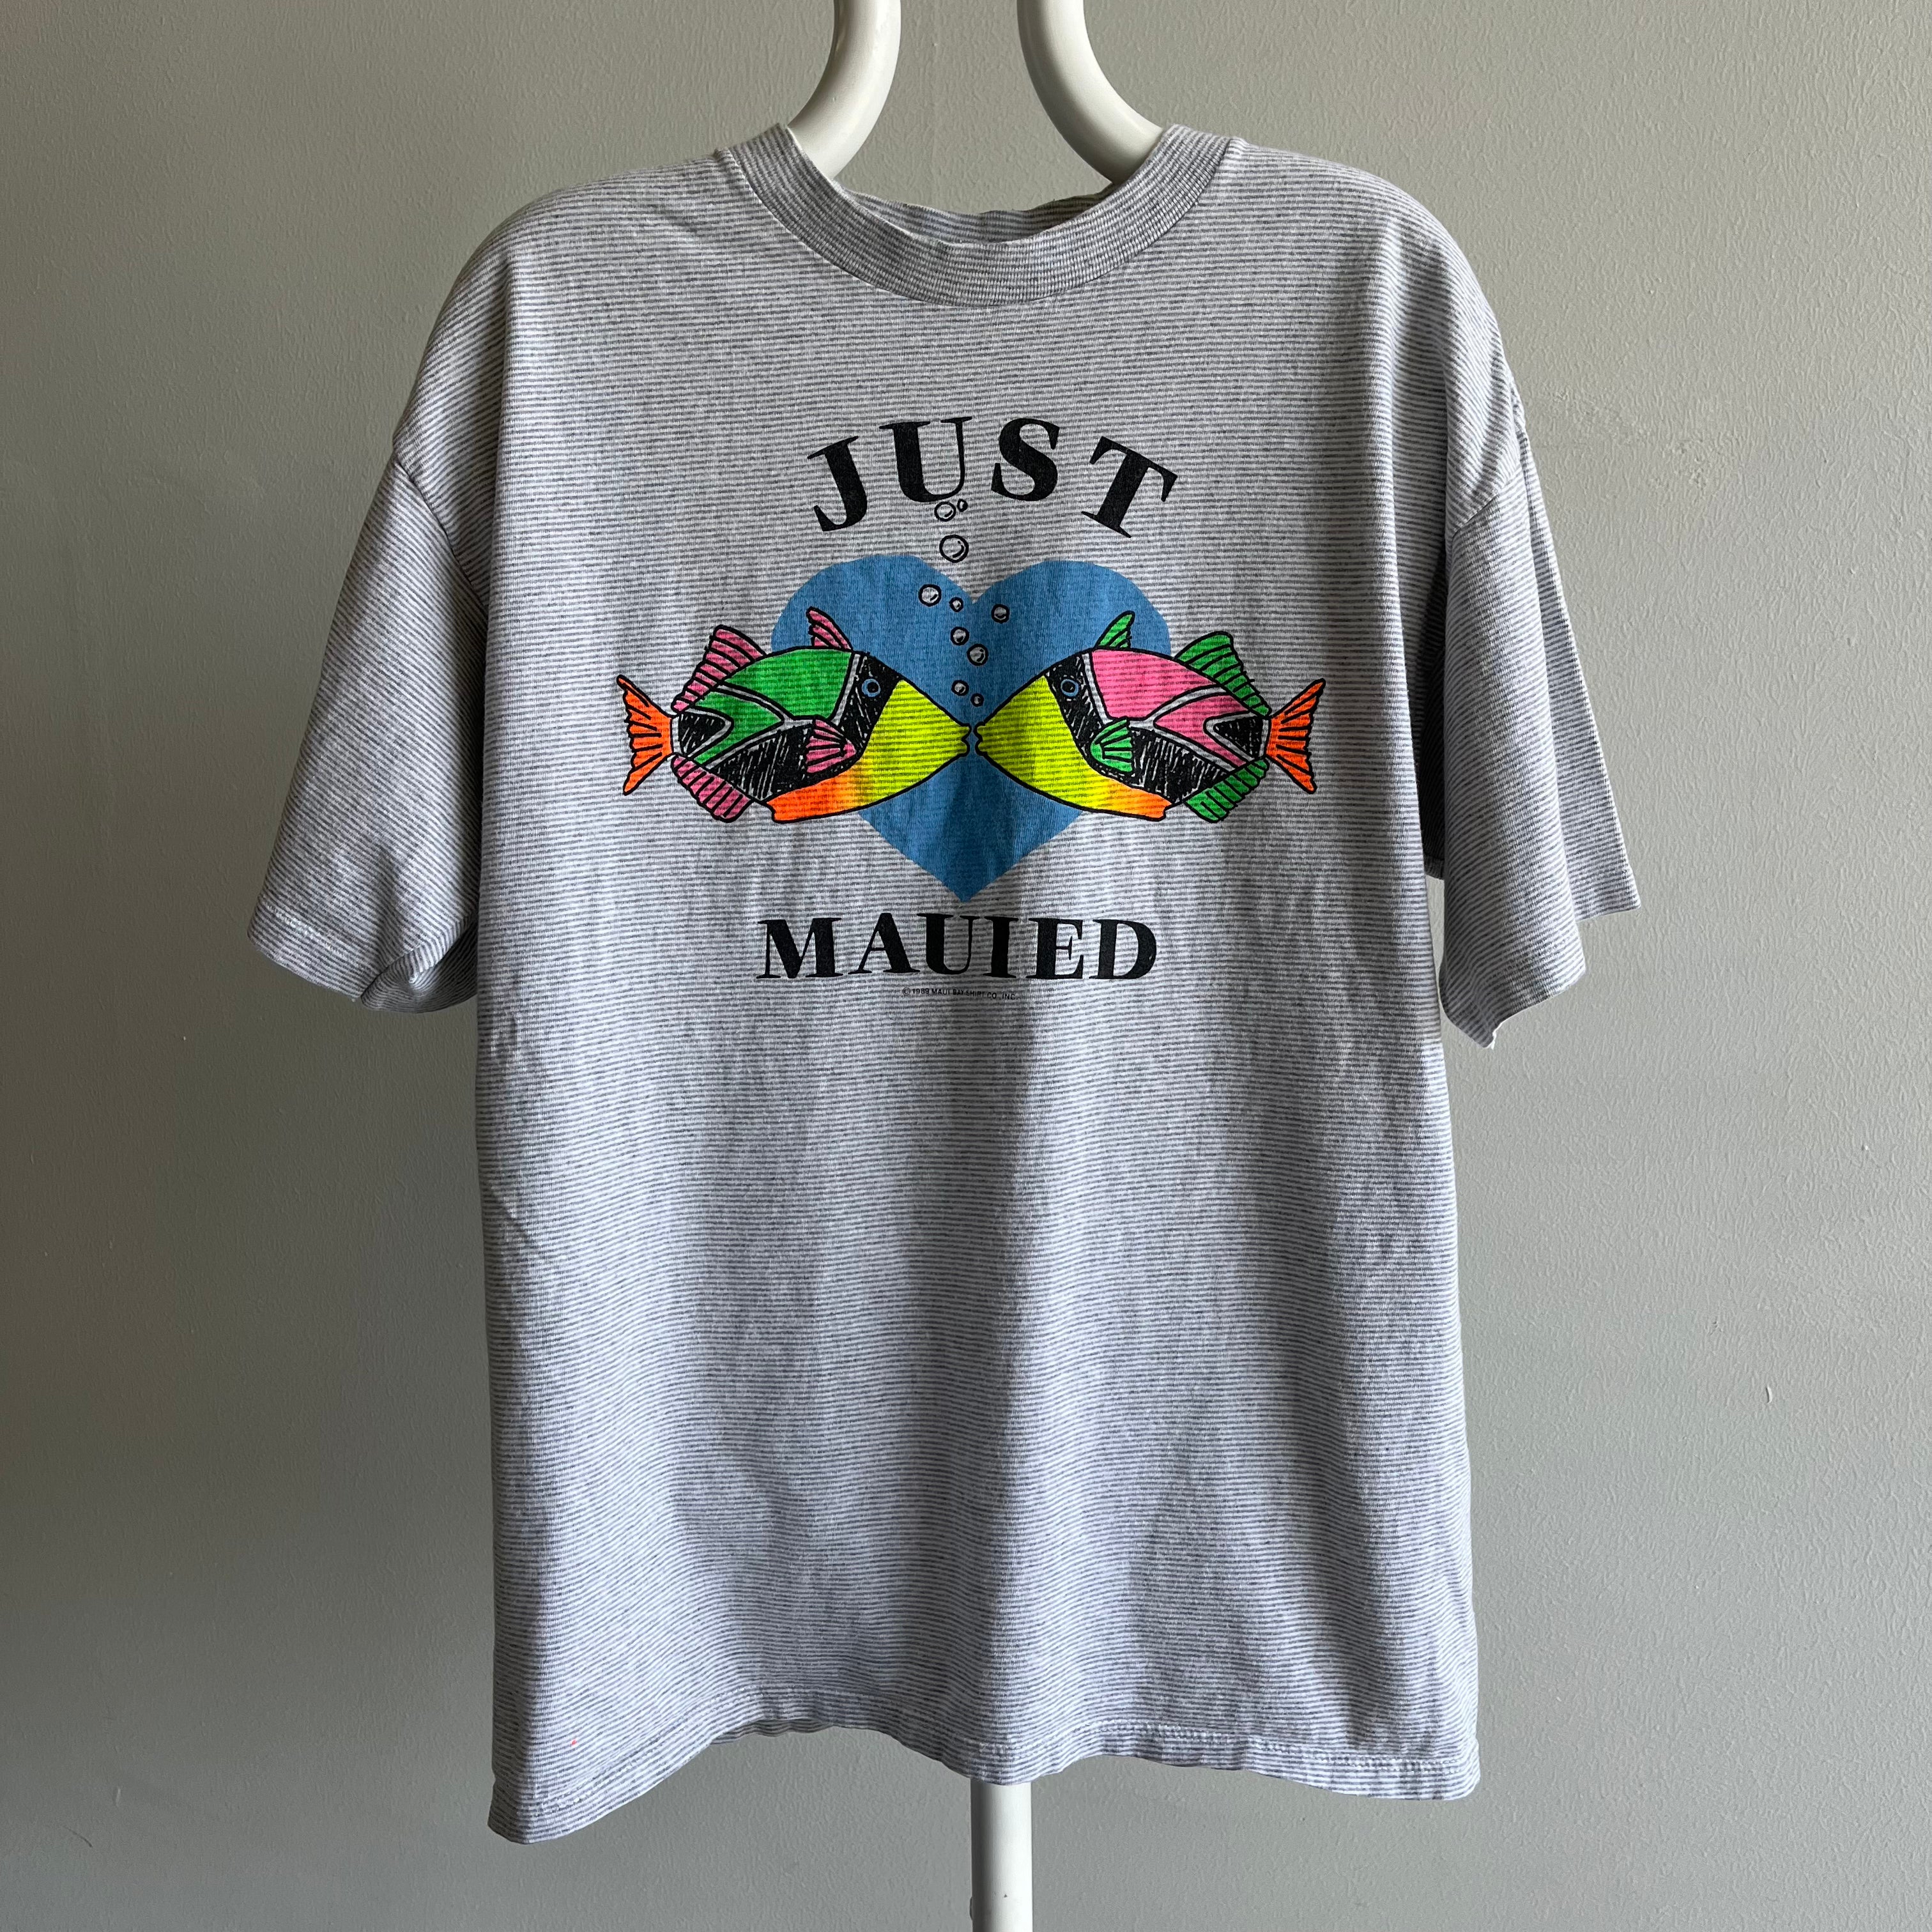 1989 Just Mauied (yak, yak, yak) Pinstriped T-Shirt